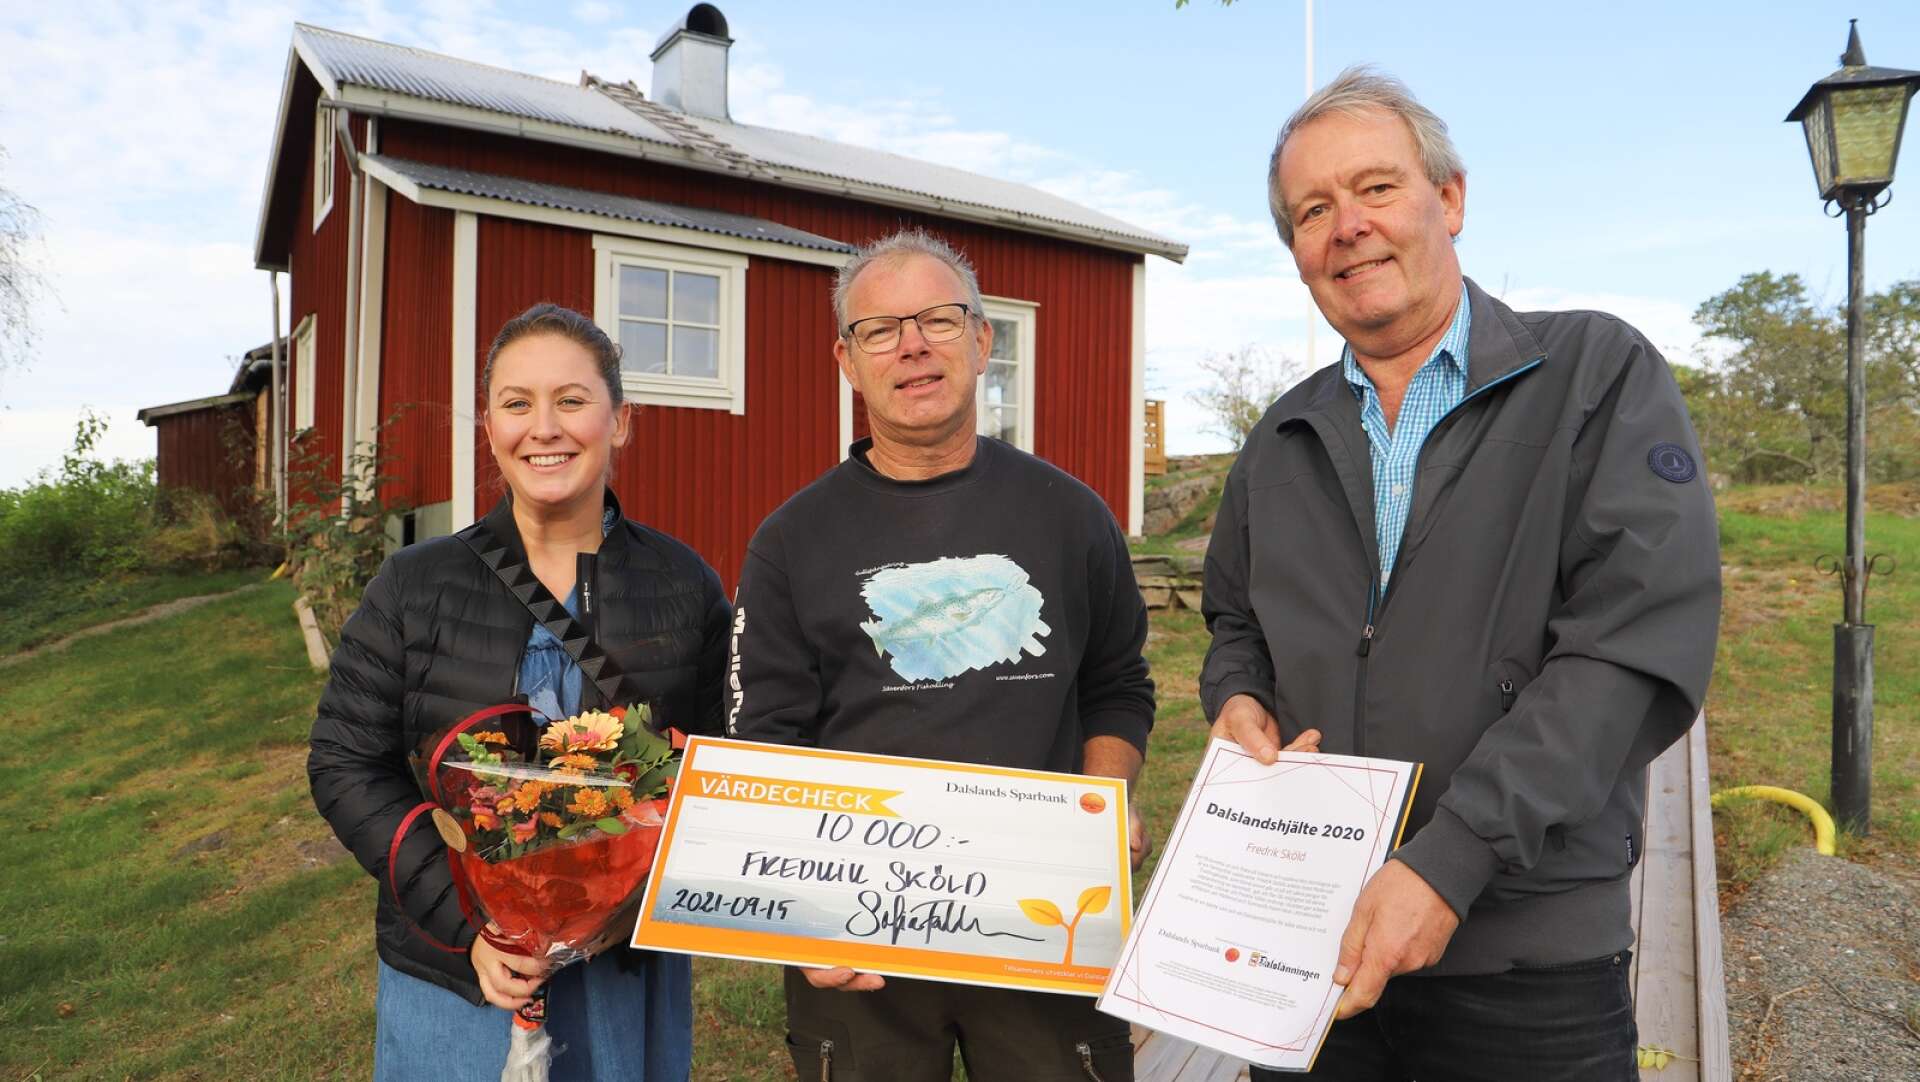 Fredrik sköld, kassör i Melleruds Trollingklubb, uppvaktades av Sofia Falkman, Dalslands Sparbank, och Thomas Wallin, Dalslänningen när han mottog utmärkelsen Daslandshjälte 2020.